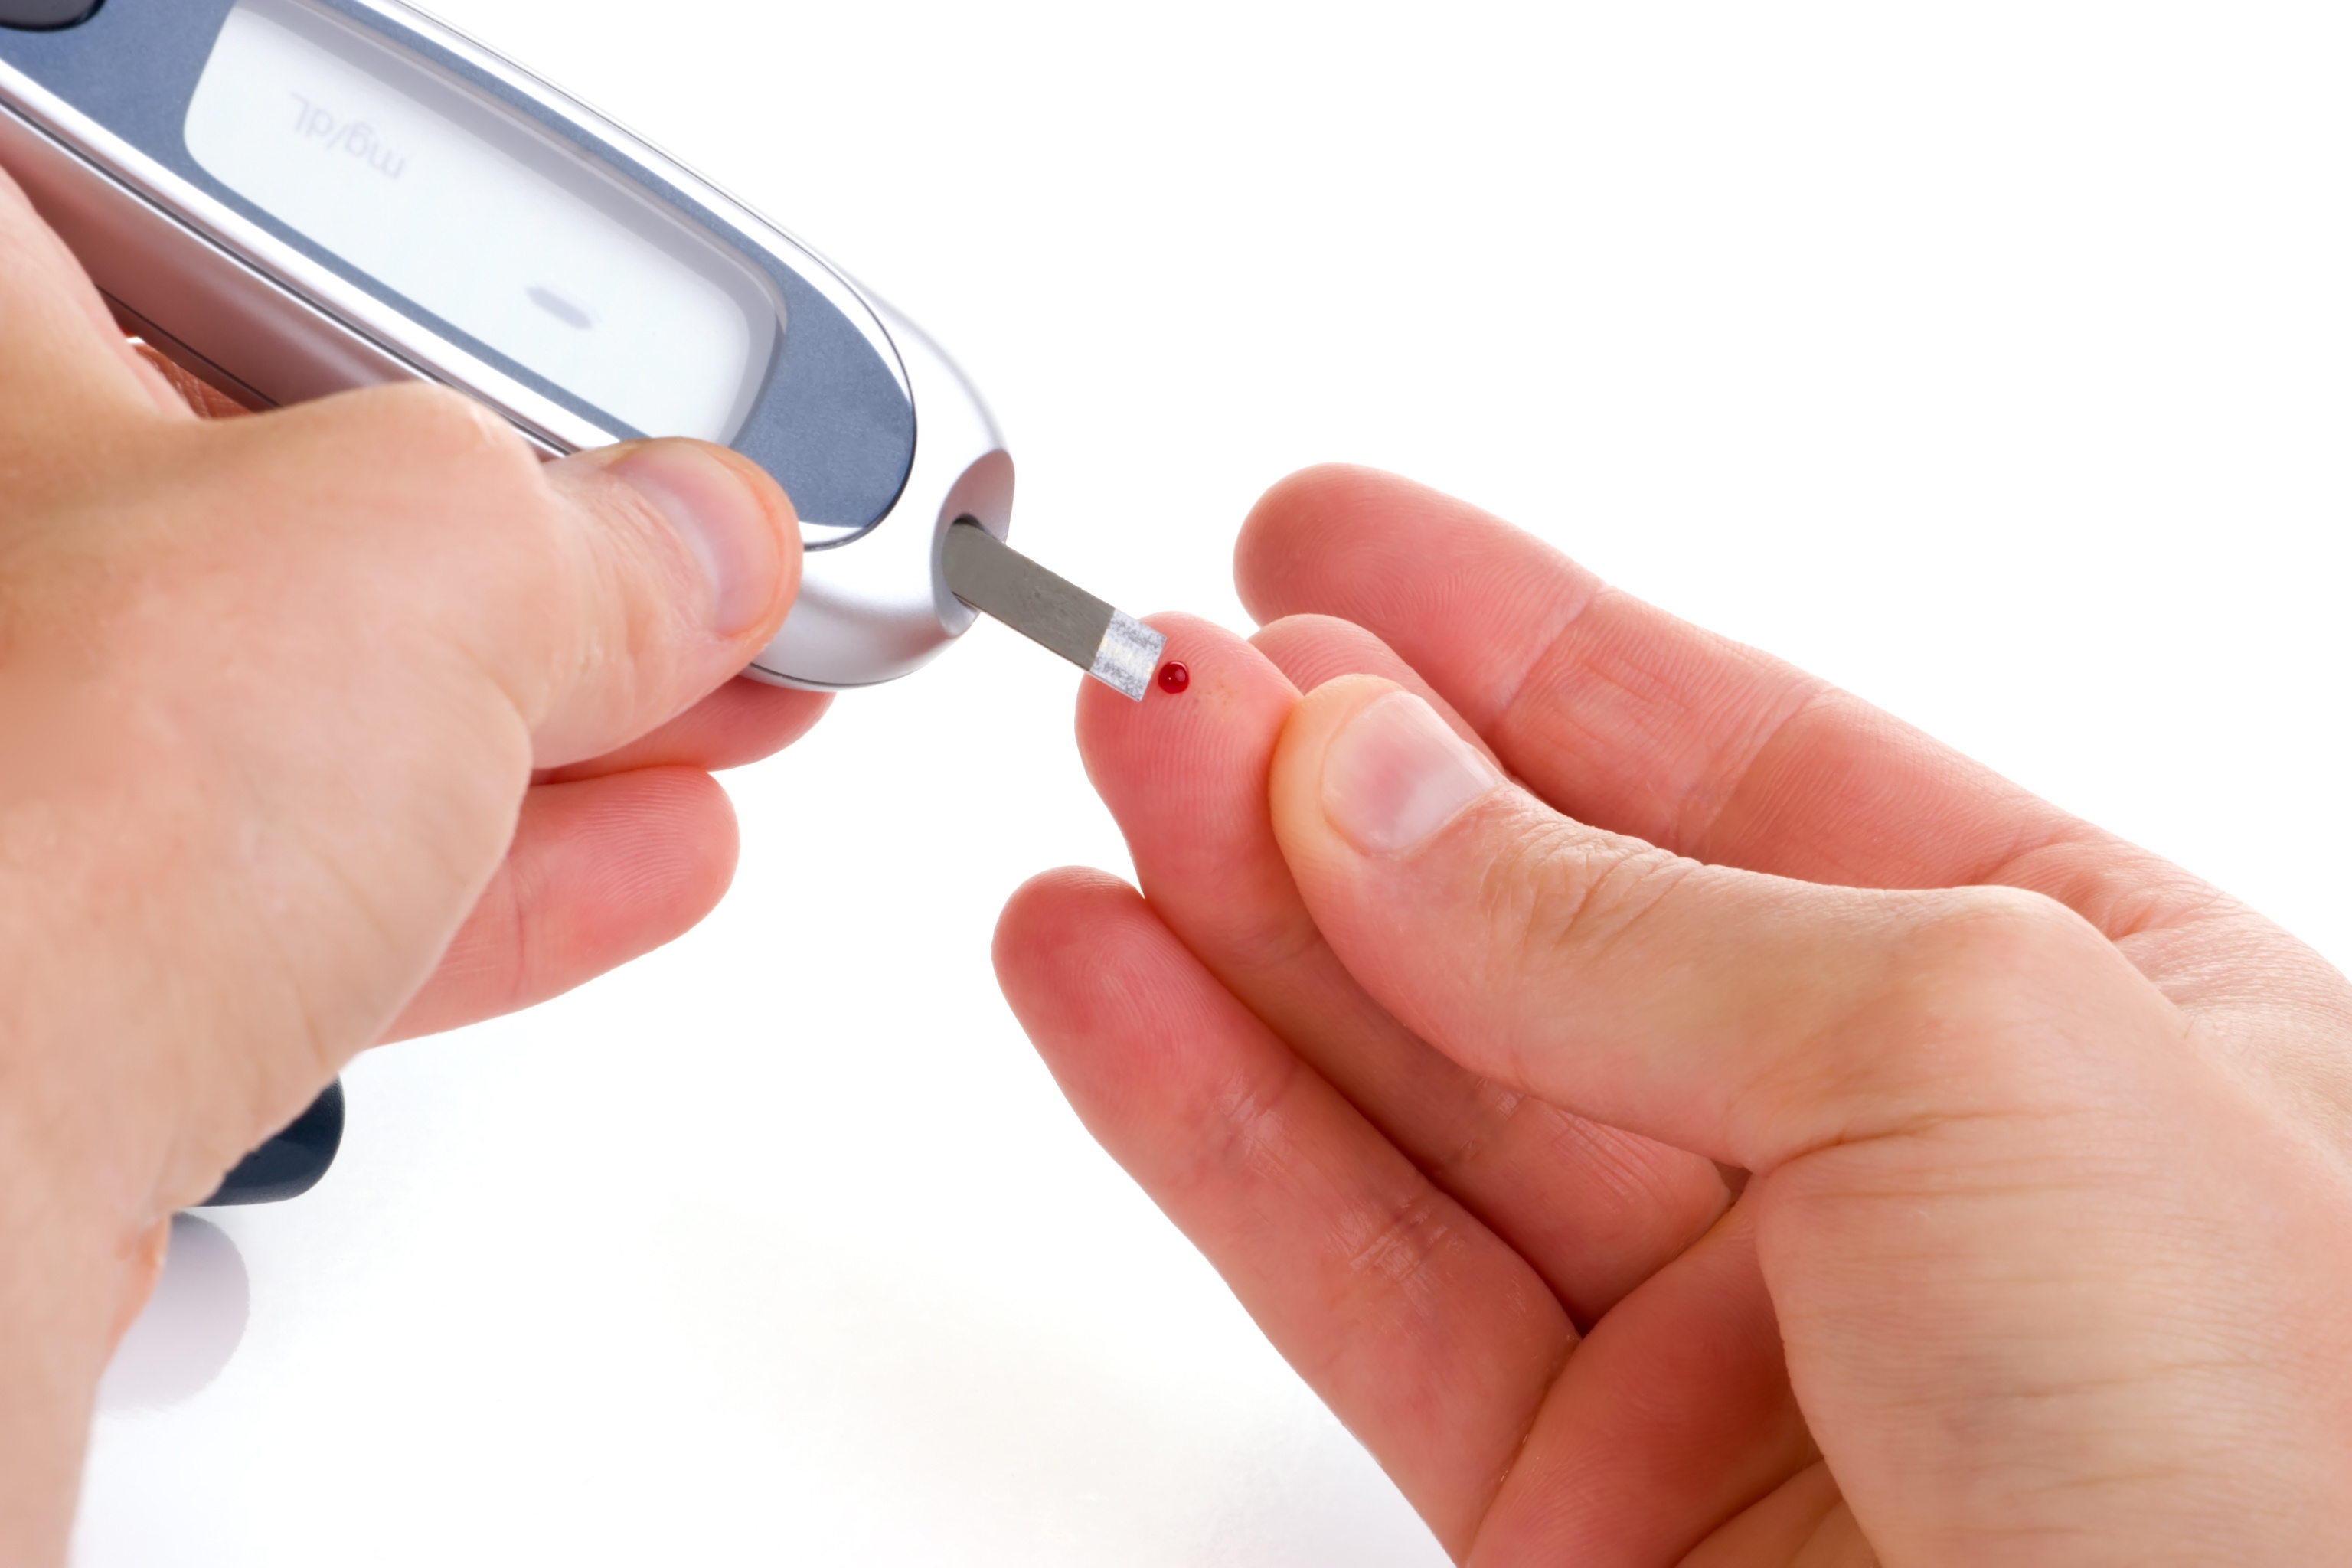 Шокираща тенденция: 100 000 диабетици отказват безплатно лечение